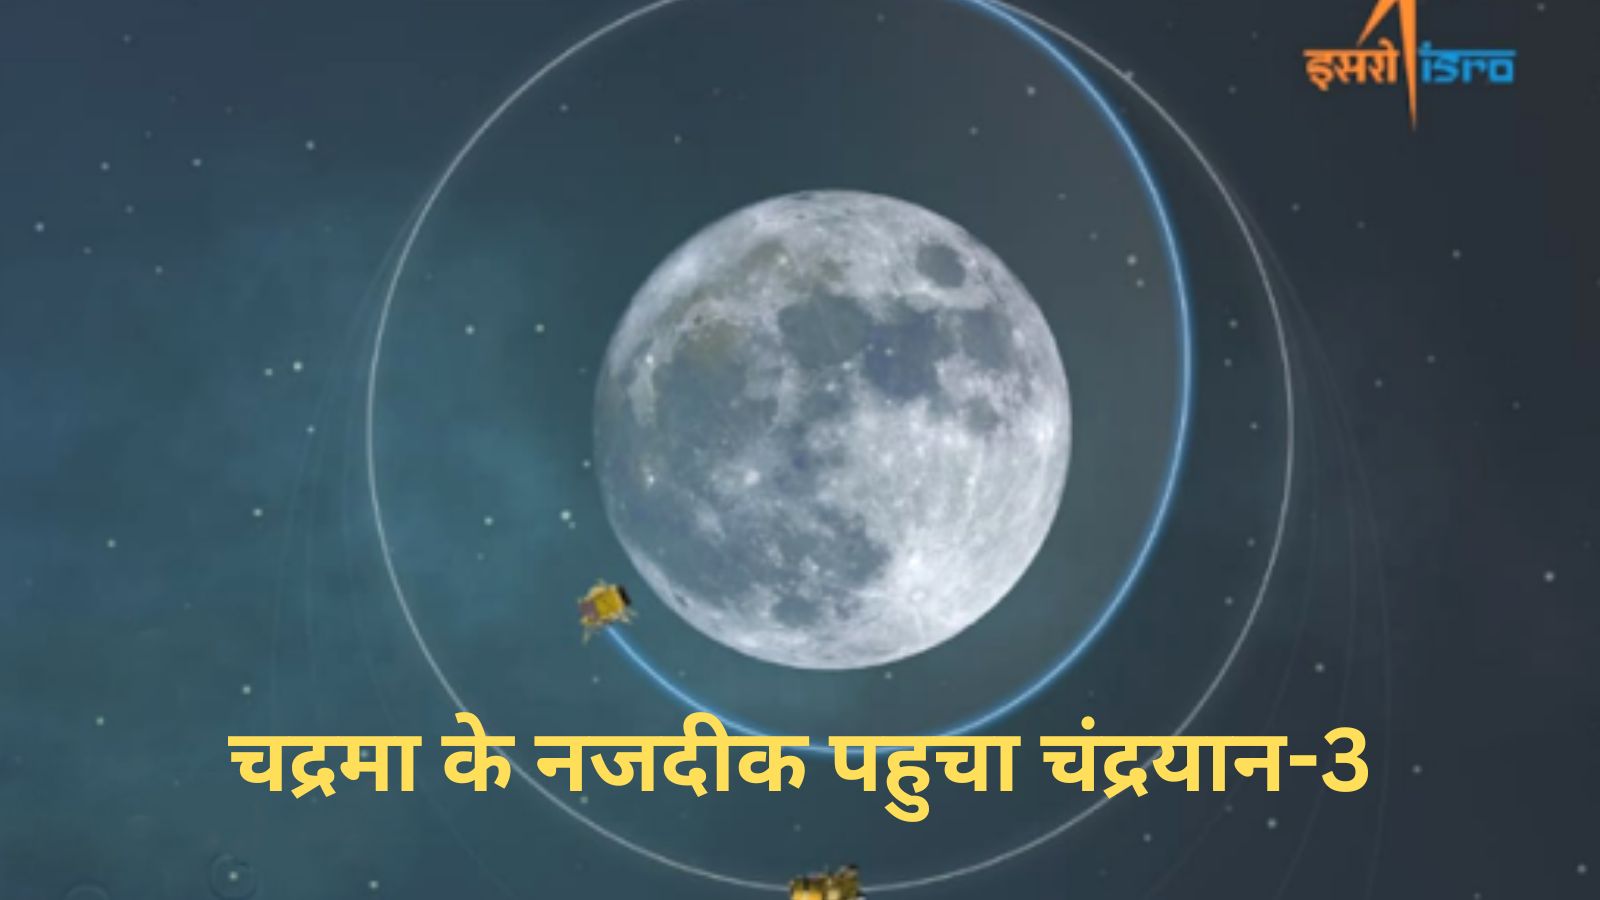 Chandrayaan-3:चद्रमा के नजदीक पहुचा चंद्रयान-3,इसरो को इस दिन चंद्रयान-3 के 'सॉफ्ट लैंडिंग' करने की उम्मीद